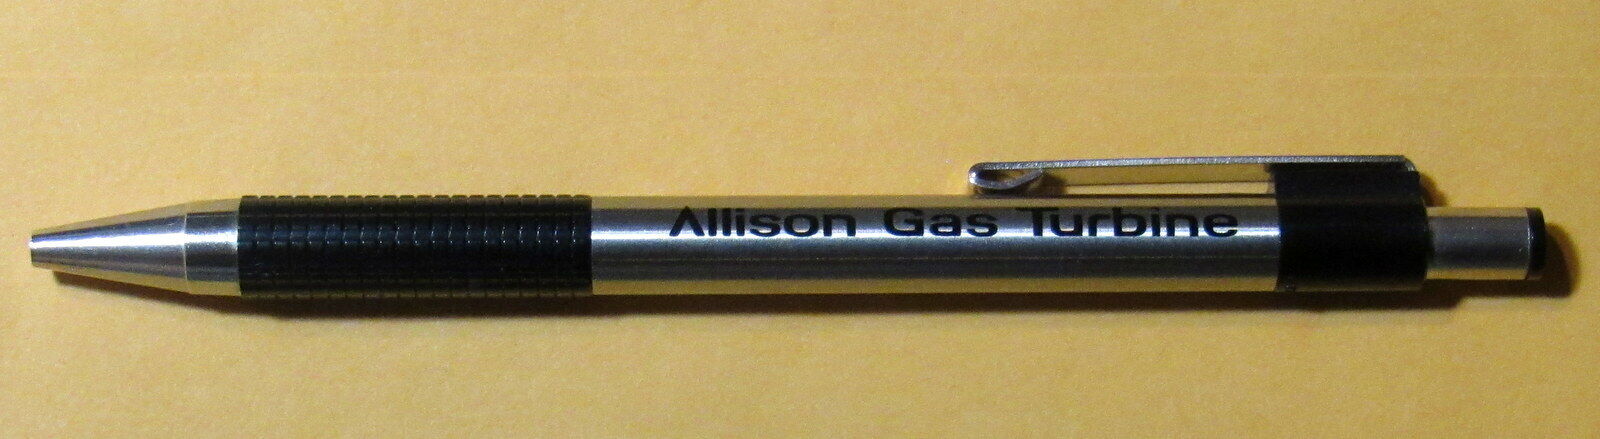 Allison Gas Turbine ballpoint pen corporate trinket Rolls-Royce Indianapolis